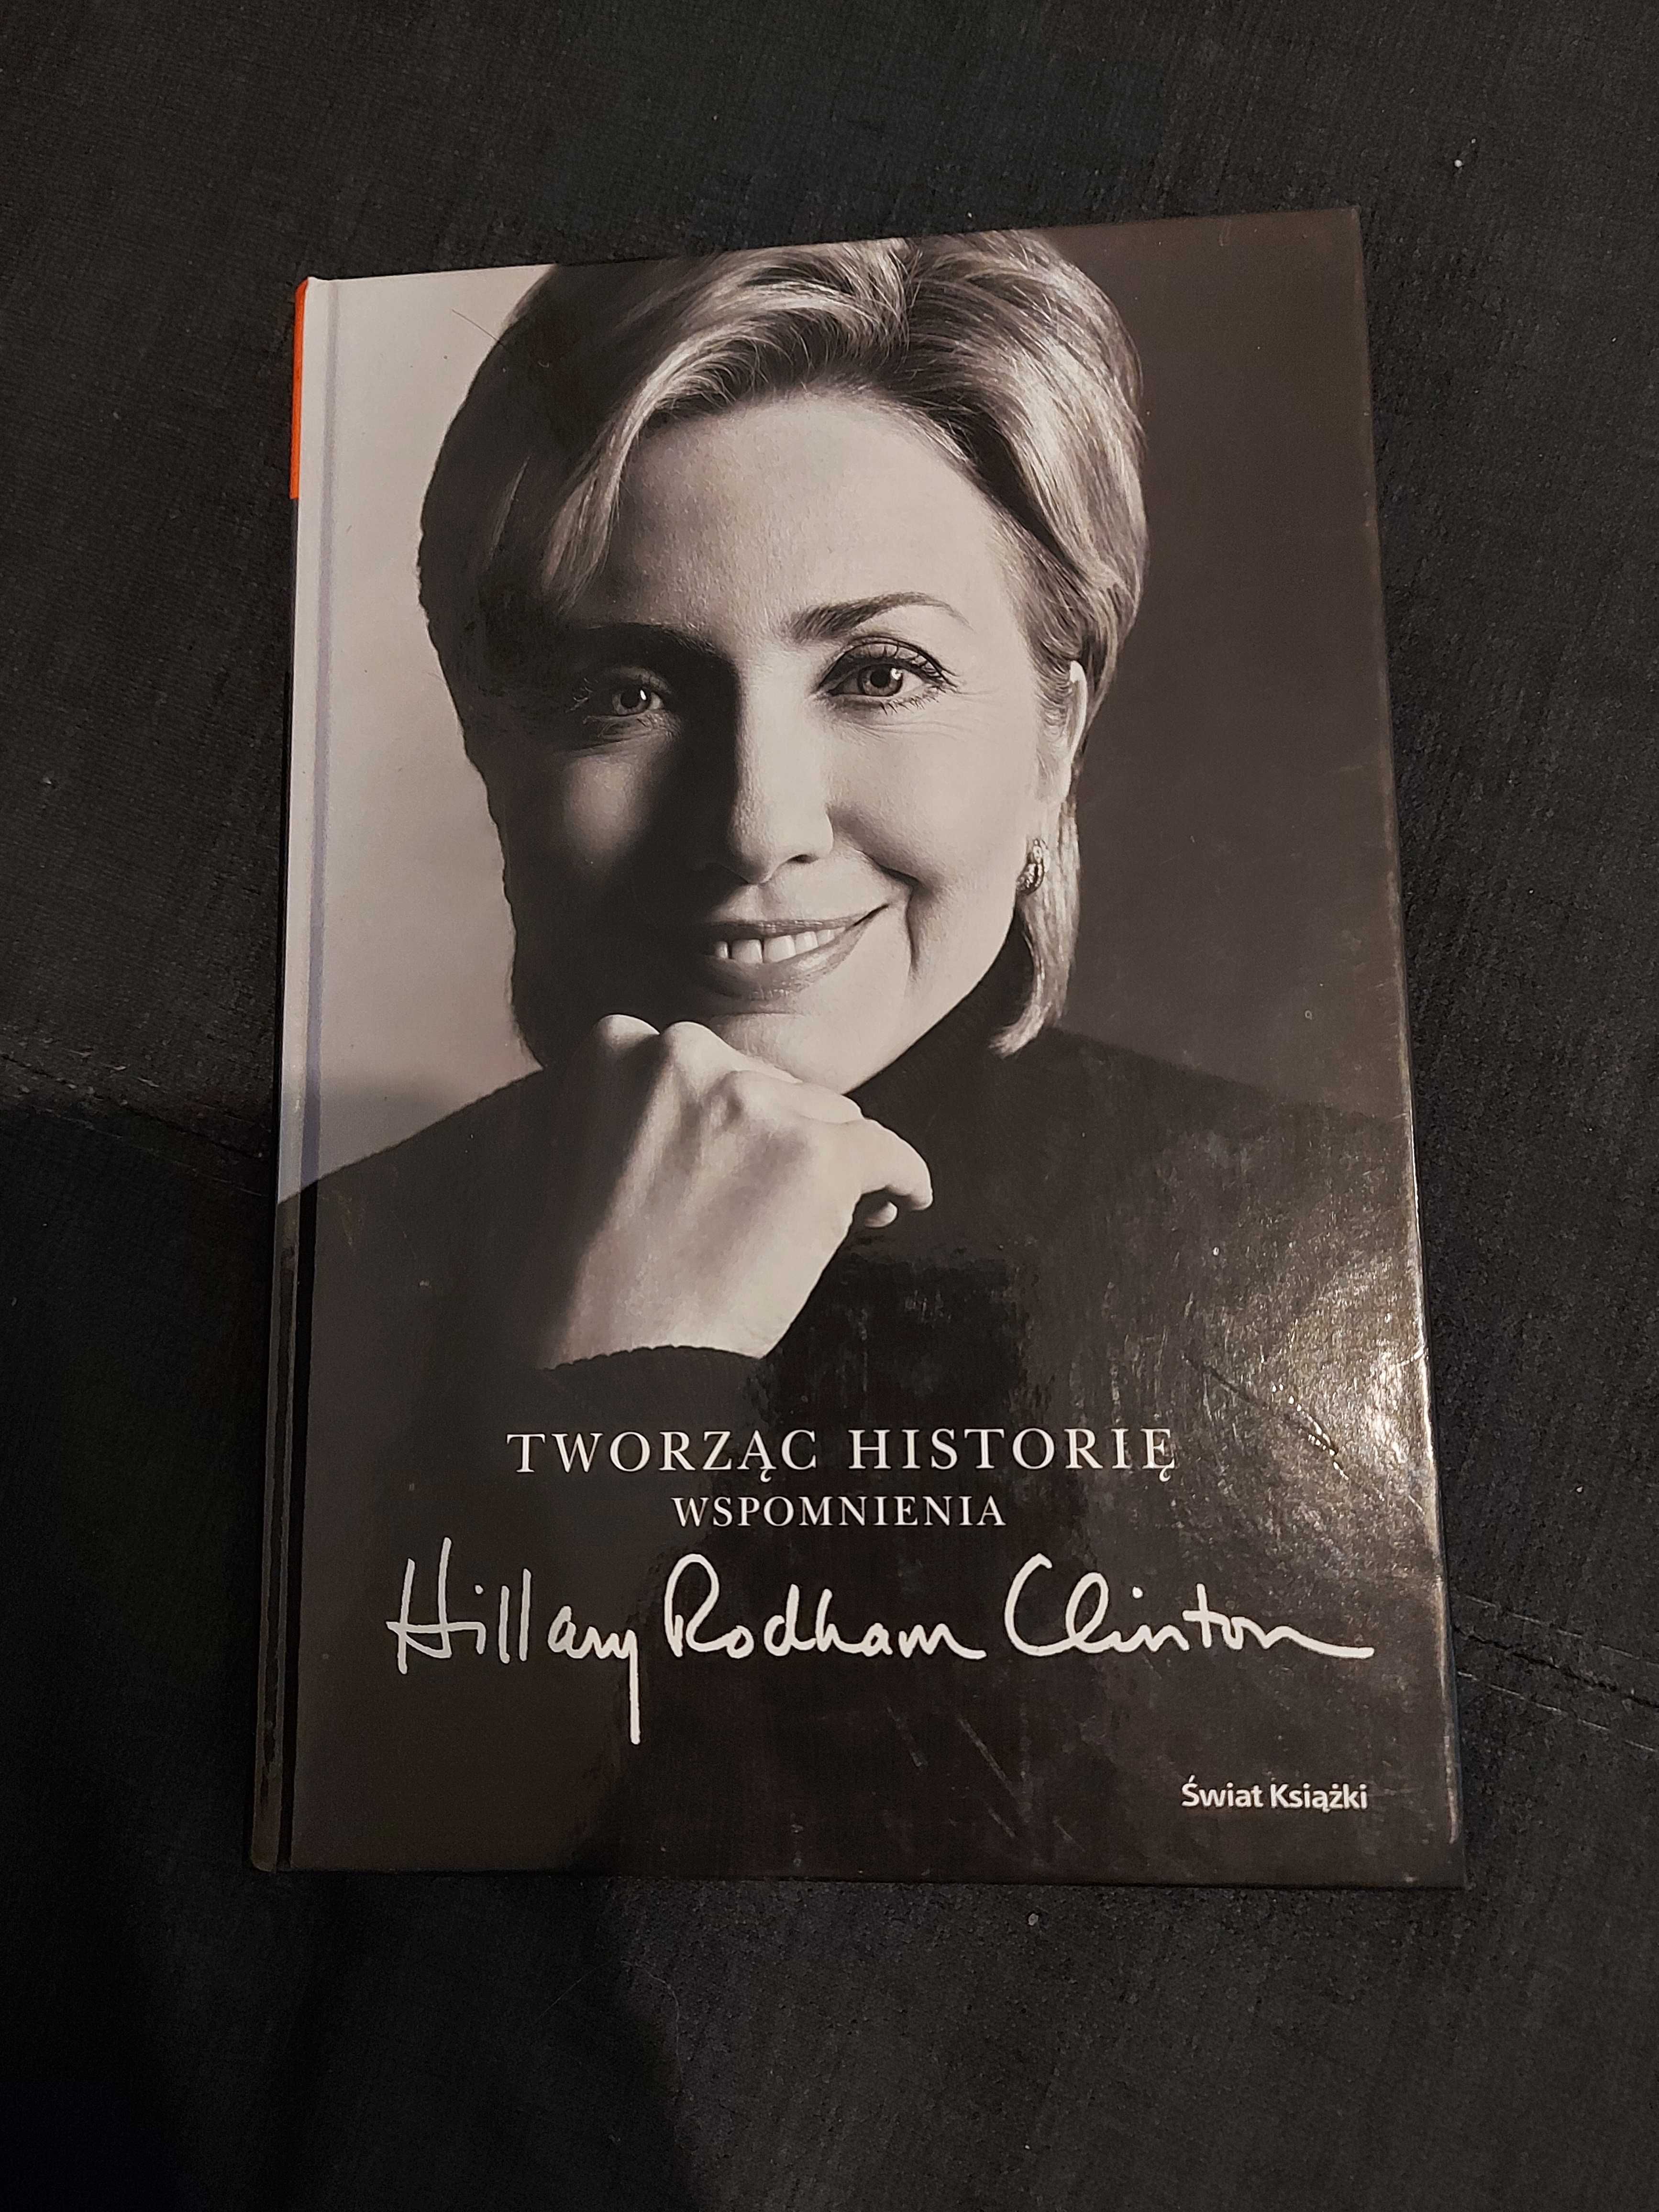 Tworząc historię - Wspomnienia Hillary Rodham Clinton